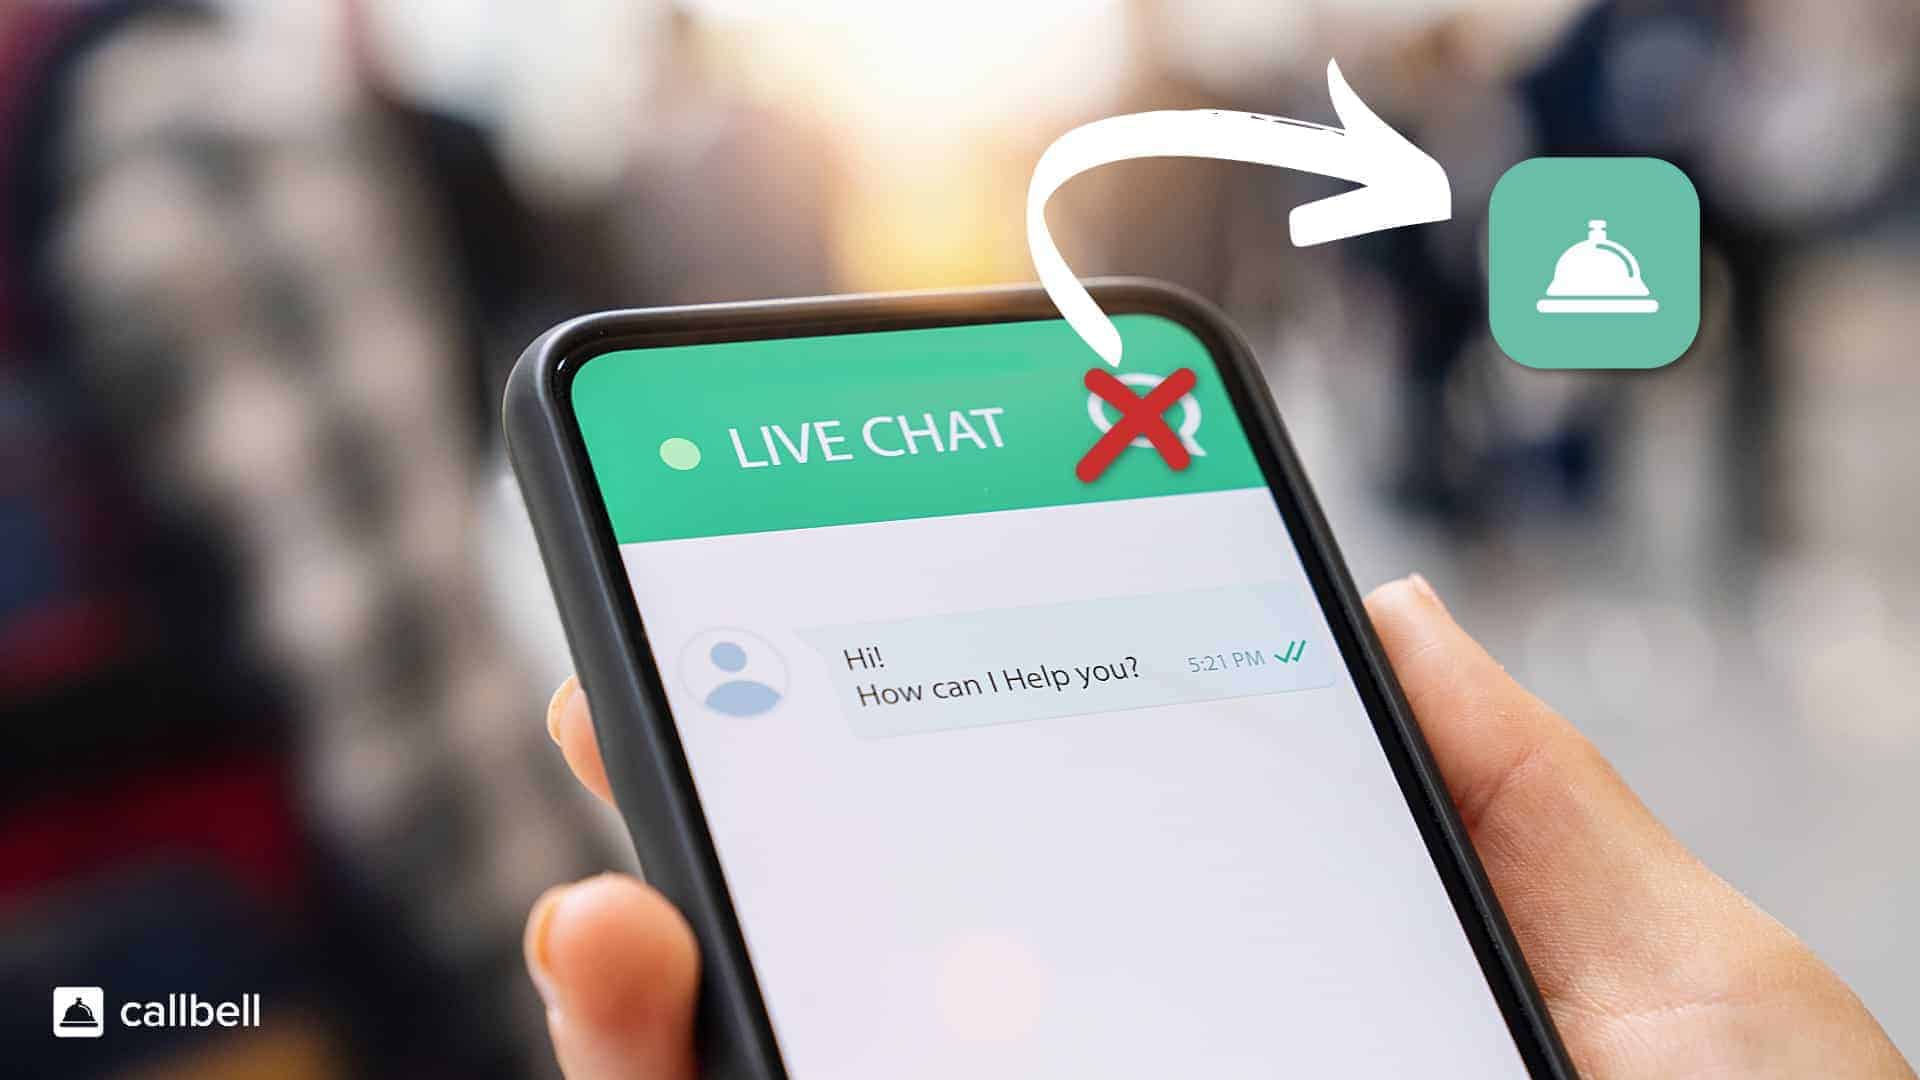 Diferencia entre una live chat y las app de mensageria